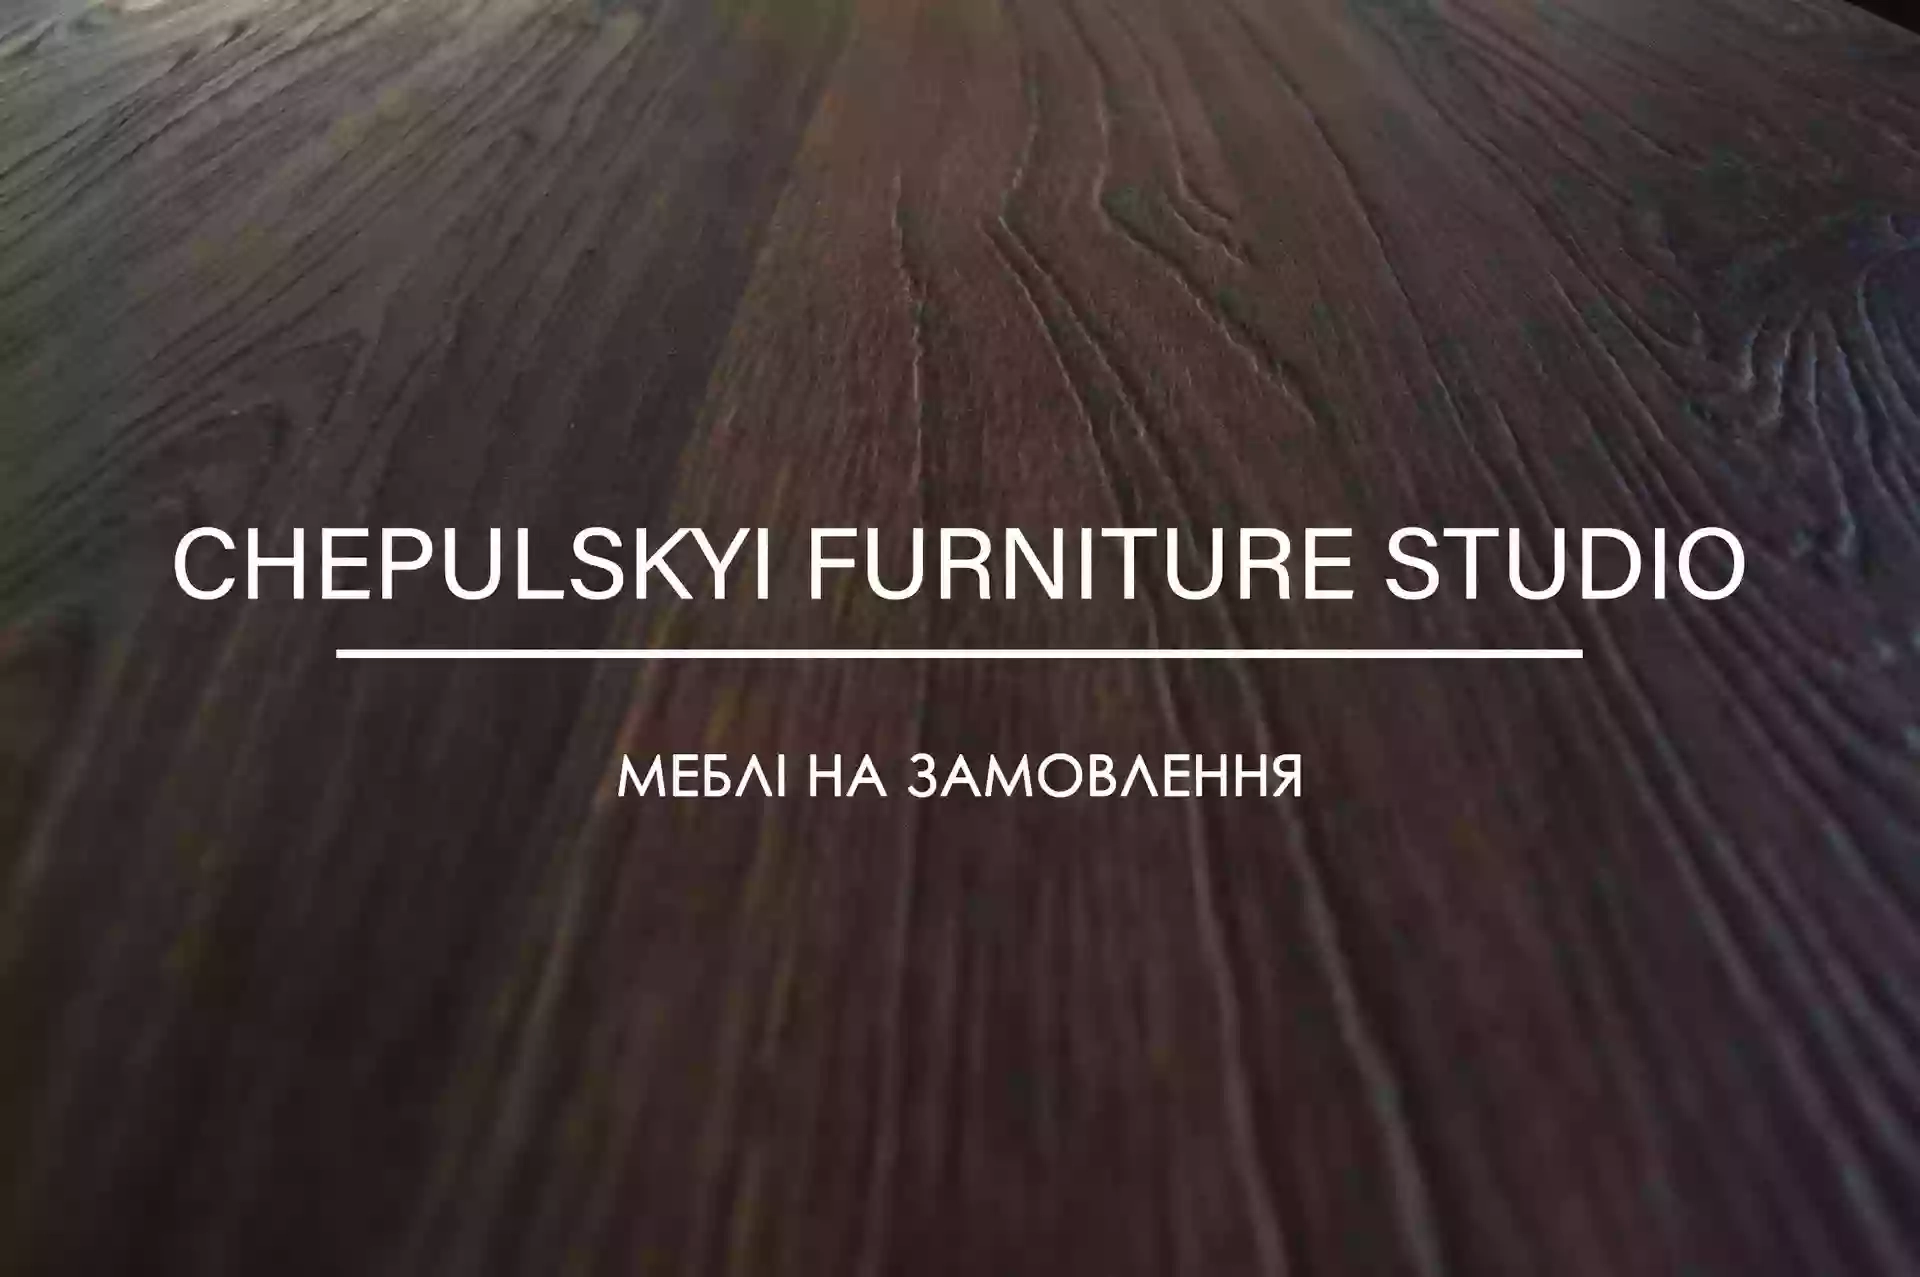 Chepulskyi Furniture Studio